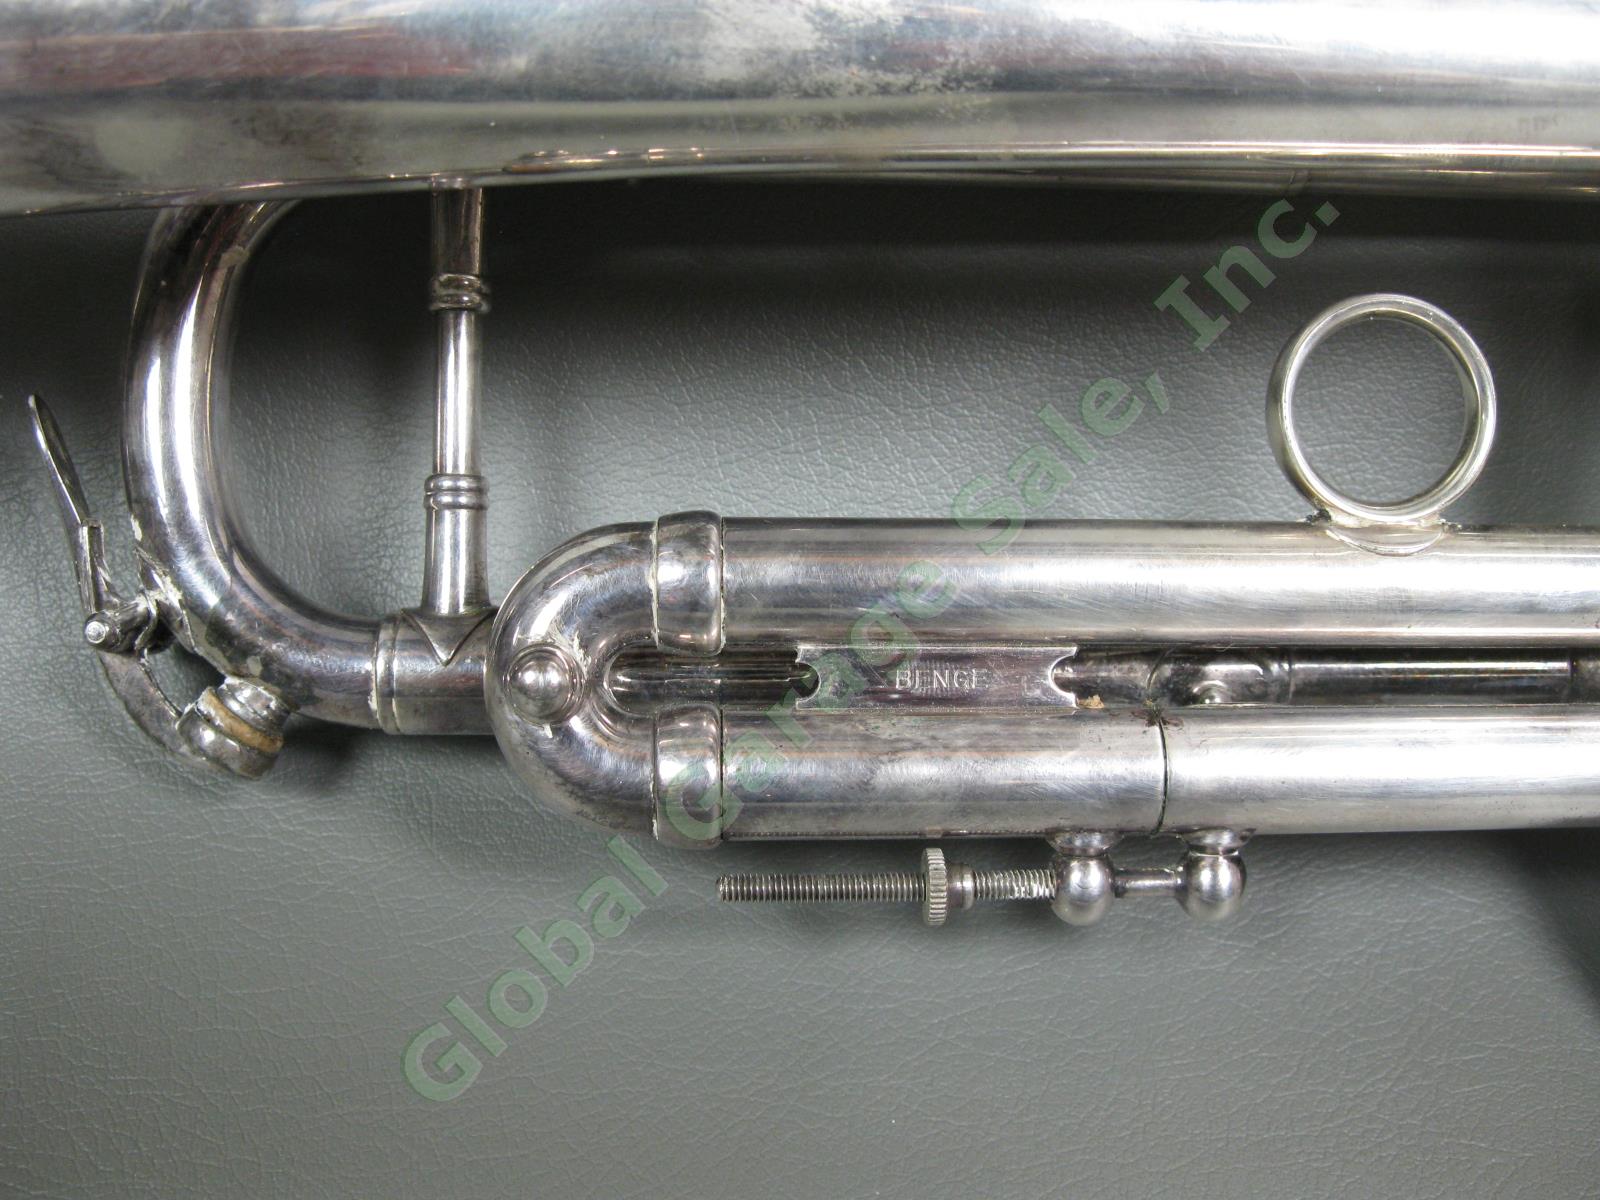 1959 E Elden Benge Resno-Tempered Bell Trumpet #4215 MLP 1122 W Burbank BLVD CA 6